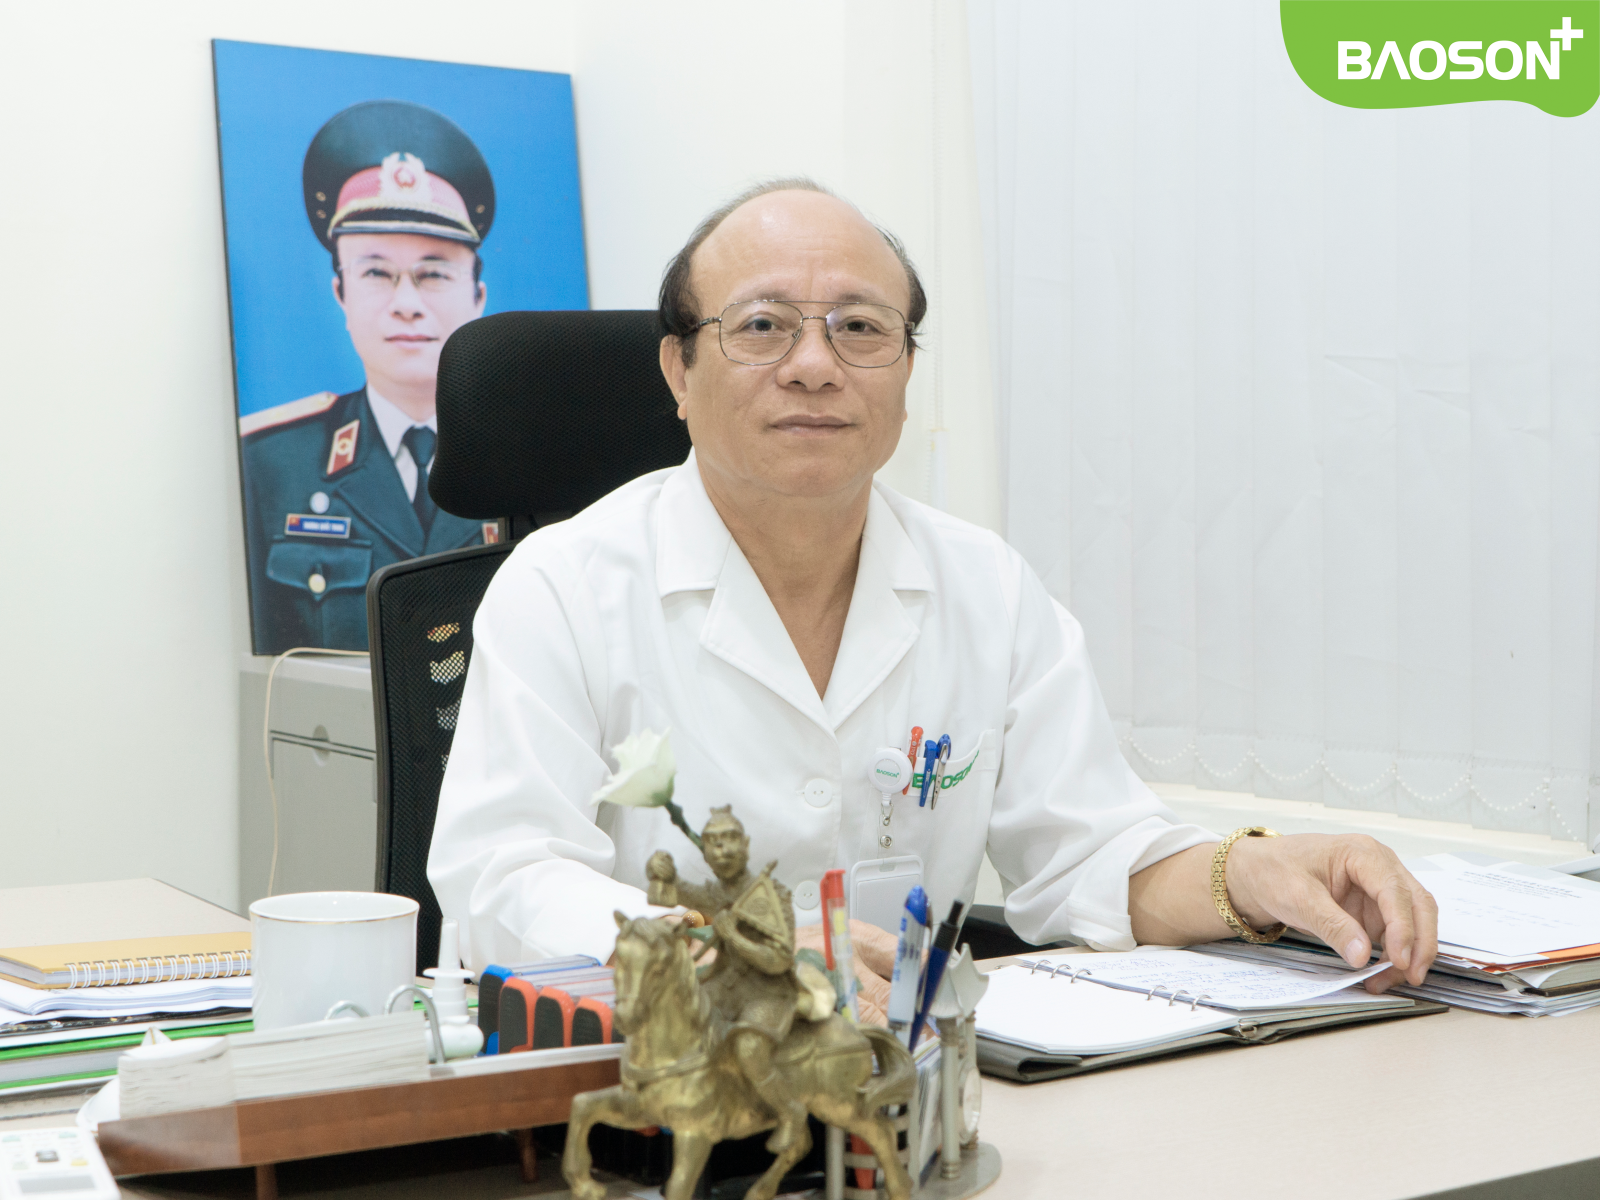 Phó giám đốc bệnh viện đa khoa Bảo Sơn - BS CKI-Thầy thuốc ưu tú Trương Quốc Trung có nhiều năm kinh nghiệm khám sức khỏe xuất khẩu lao động